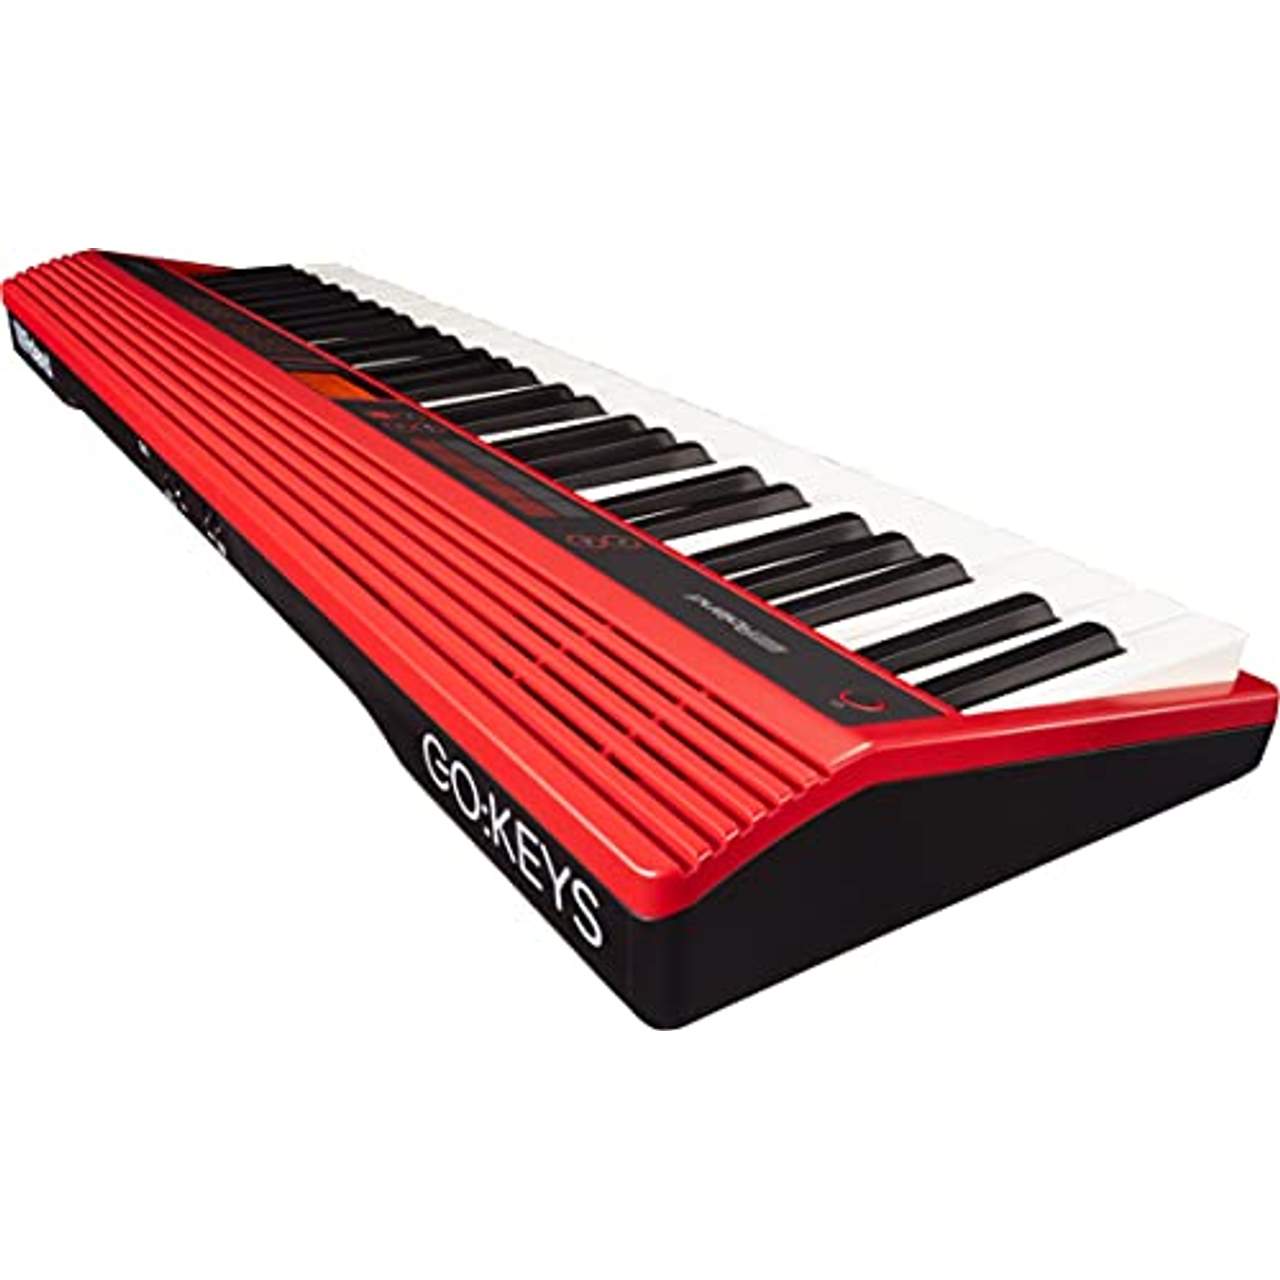 Roland GO-61K Tastatur Music creation keyboard